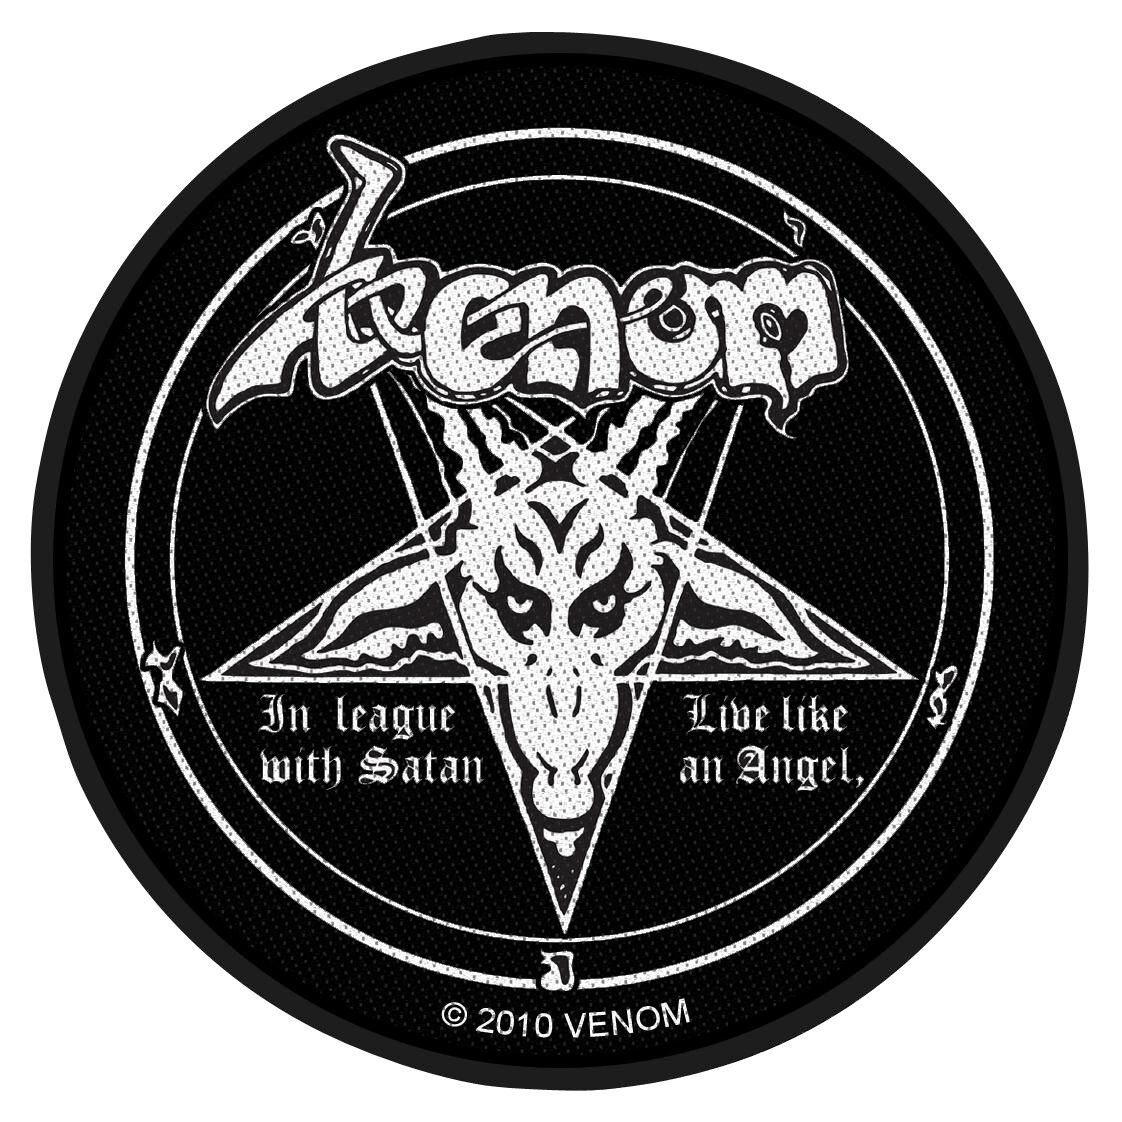 Venom Patch - In league with Satan   - Lizenziertes Merchandise!